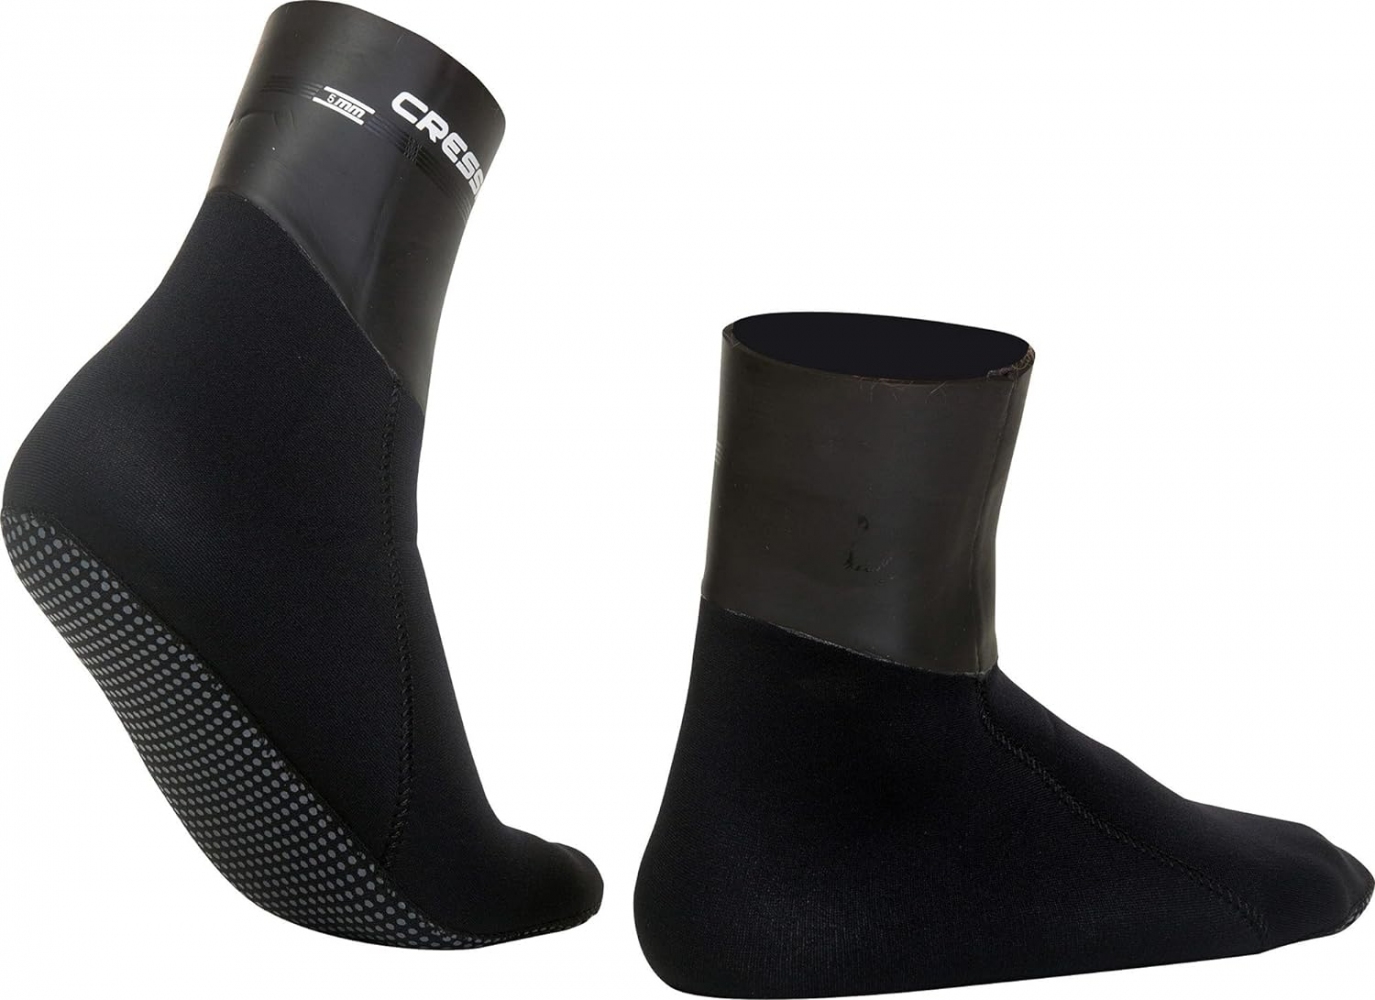 Носки для дайвинга Cressi SARAGO 5мм (цвет черный), размер M, L, Xl (неопрен) 